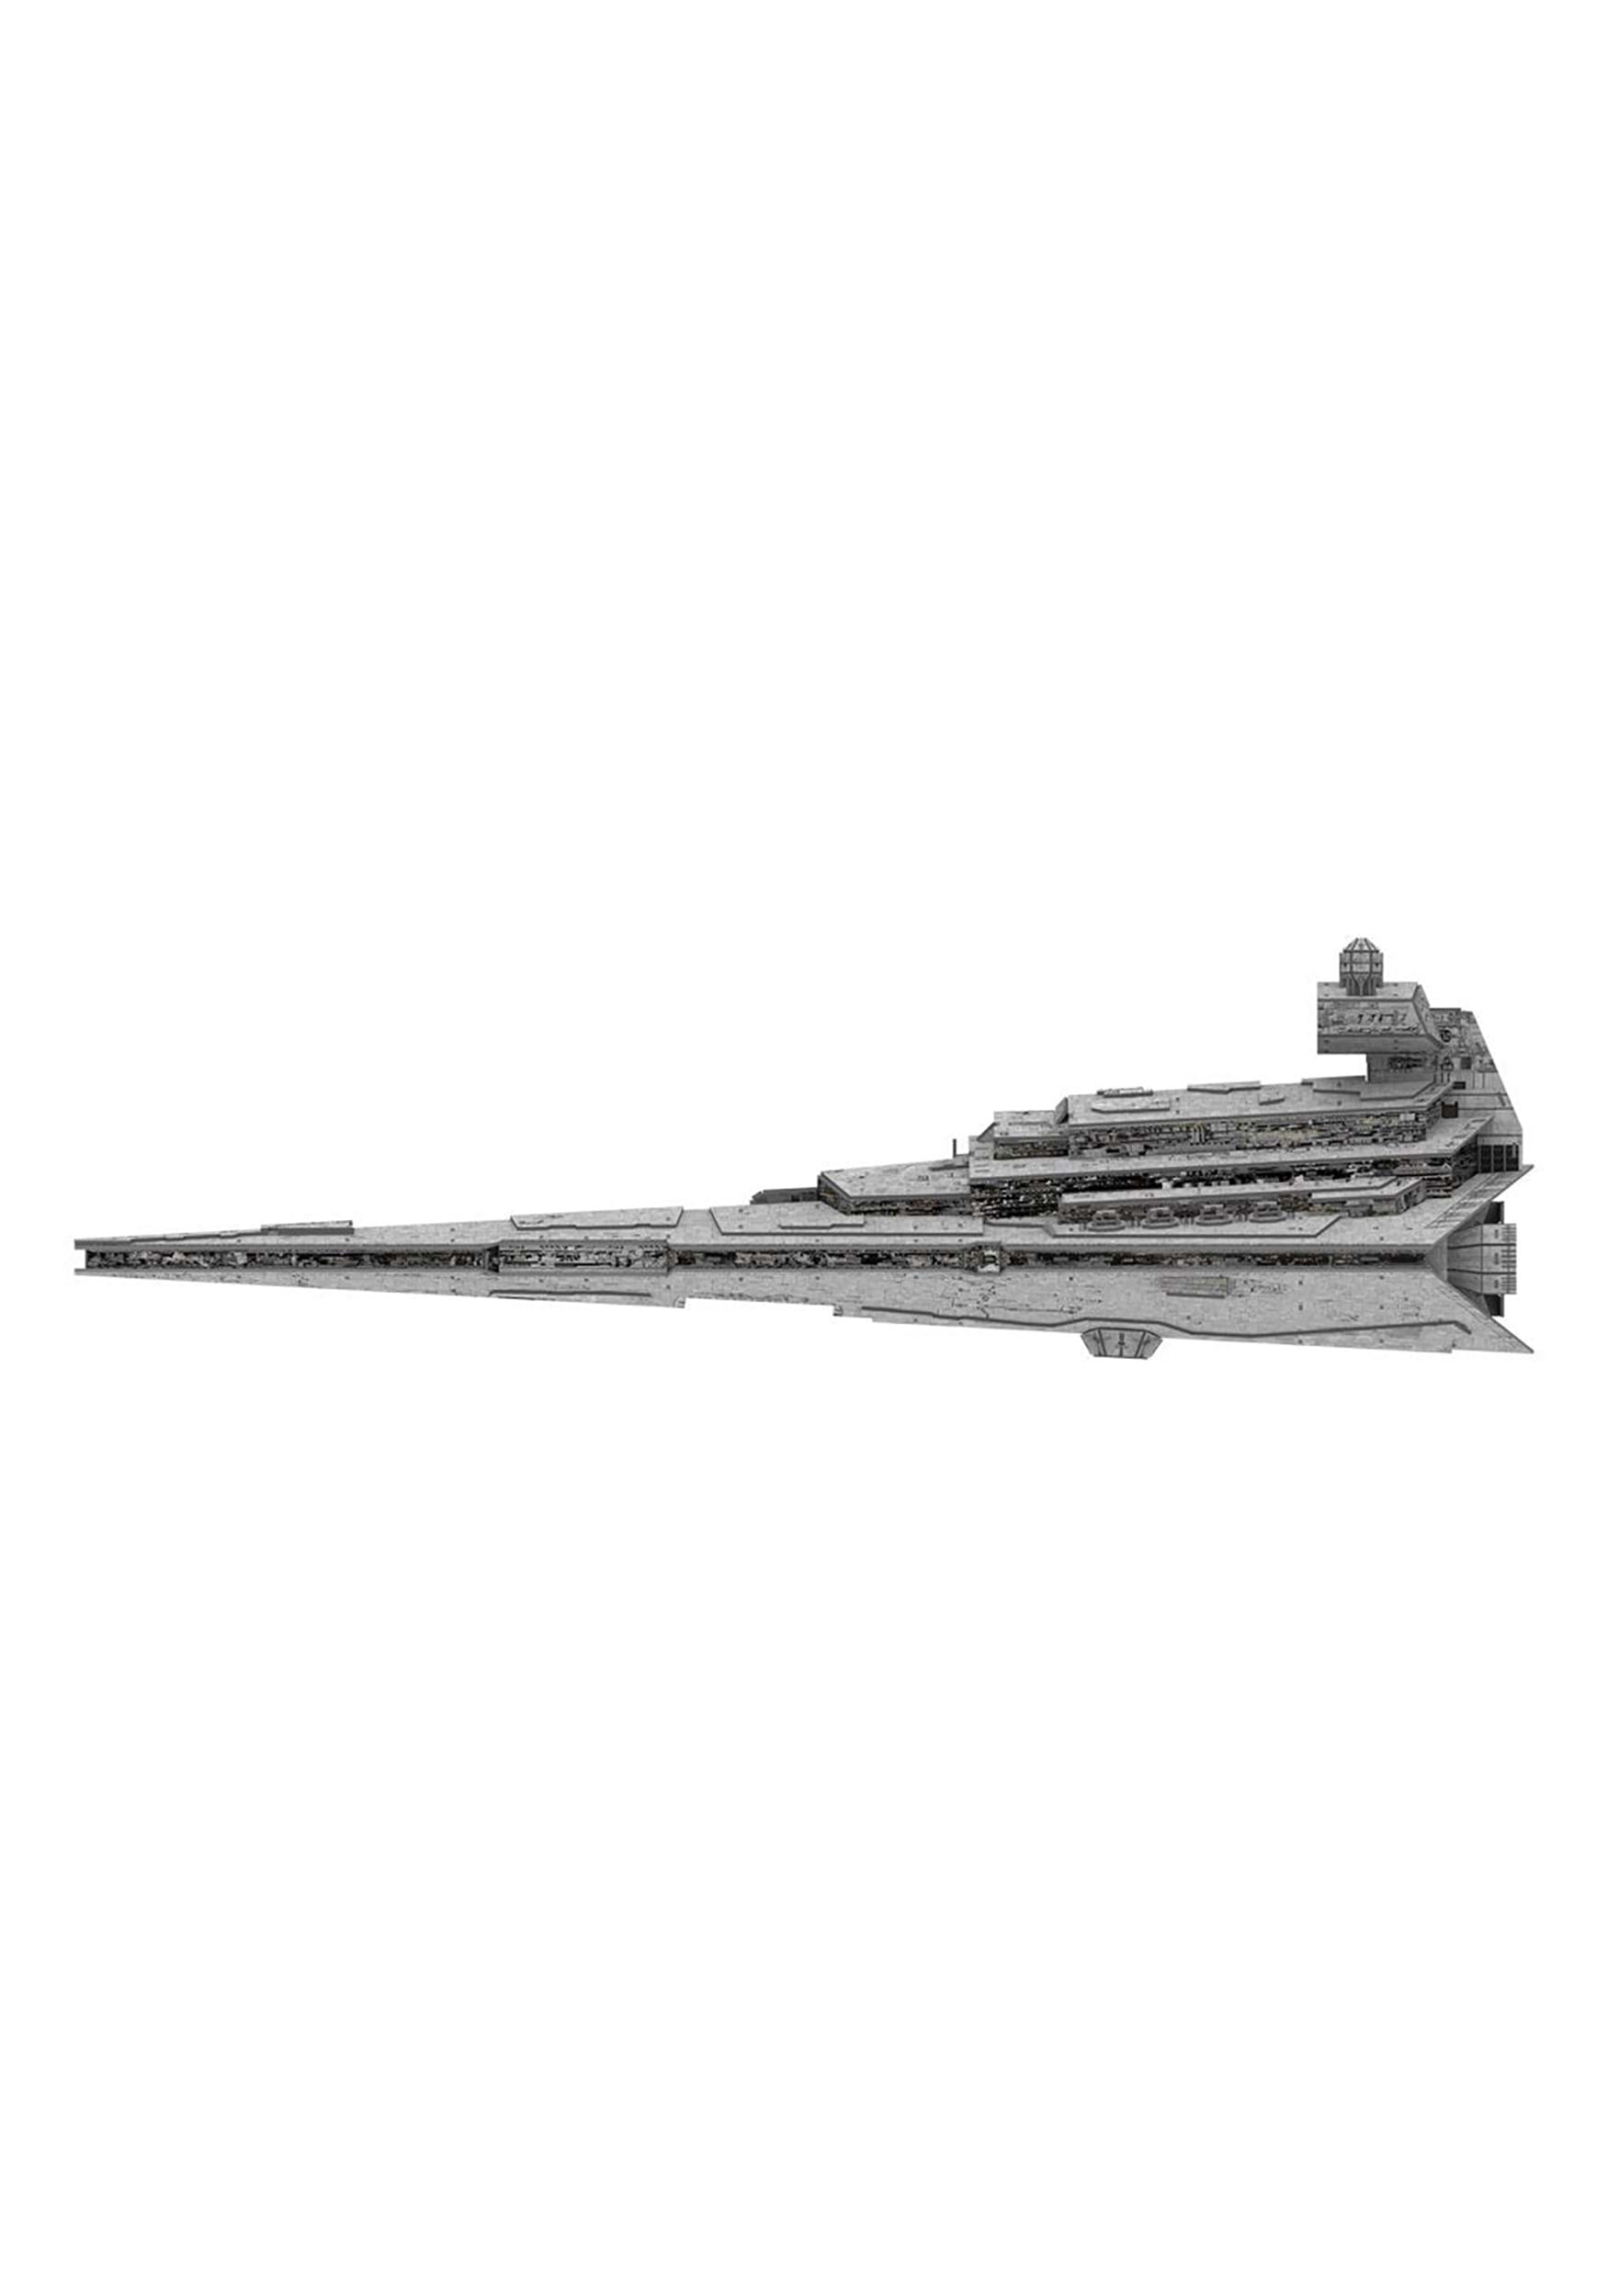 Imperial Star Destroyer Star Wars Paper Model Kit